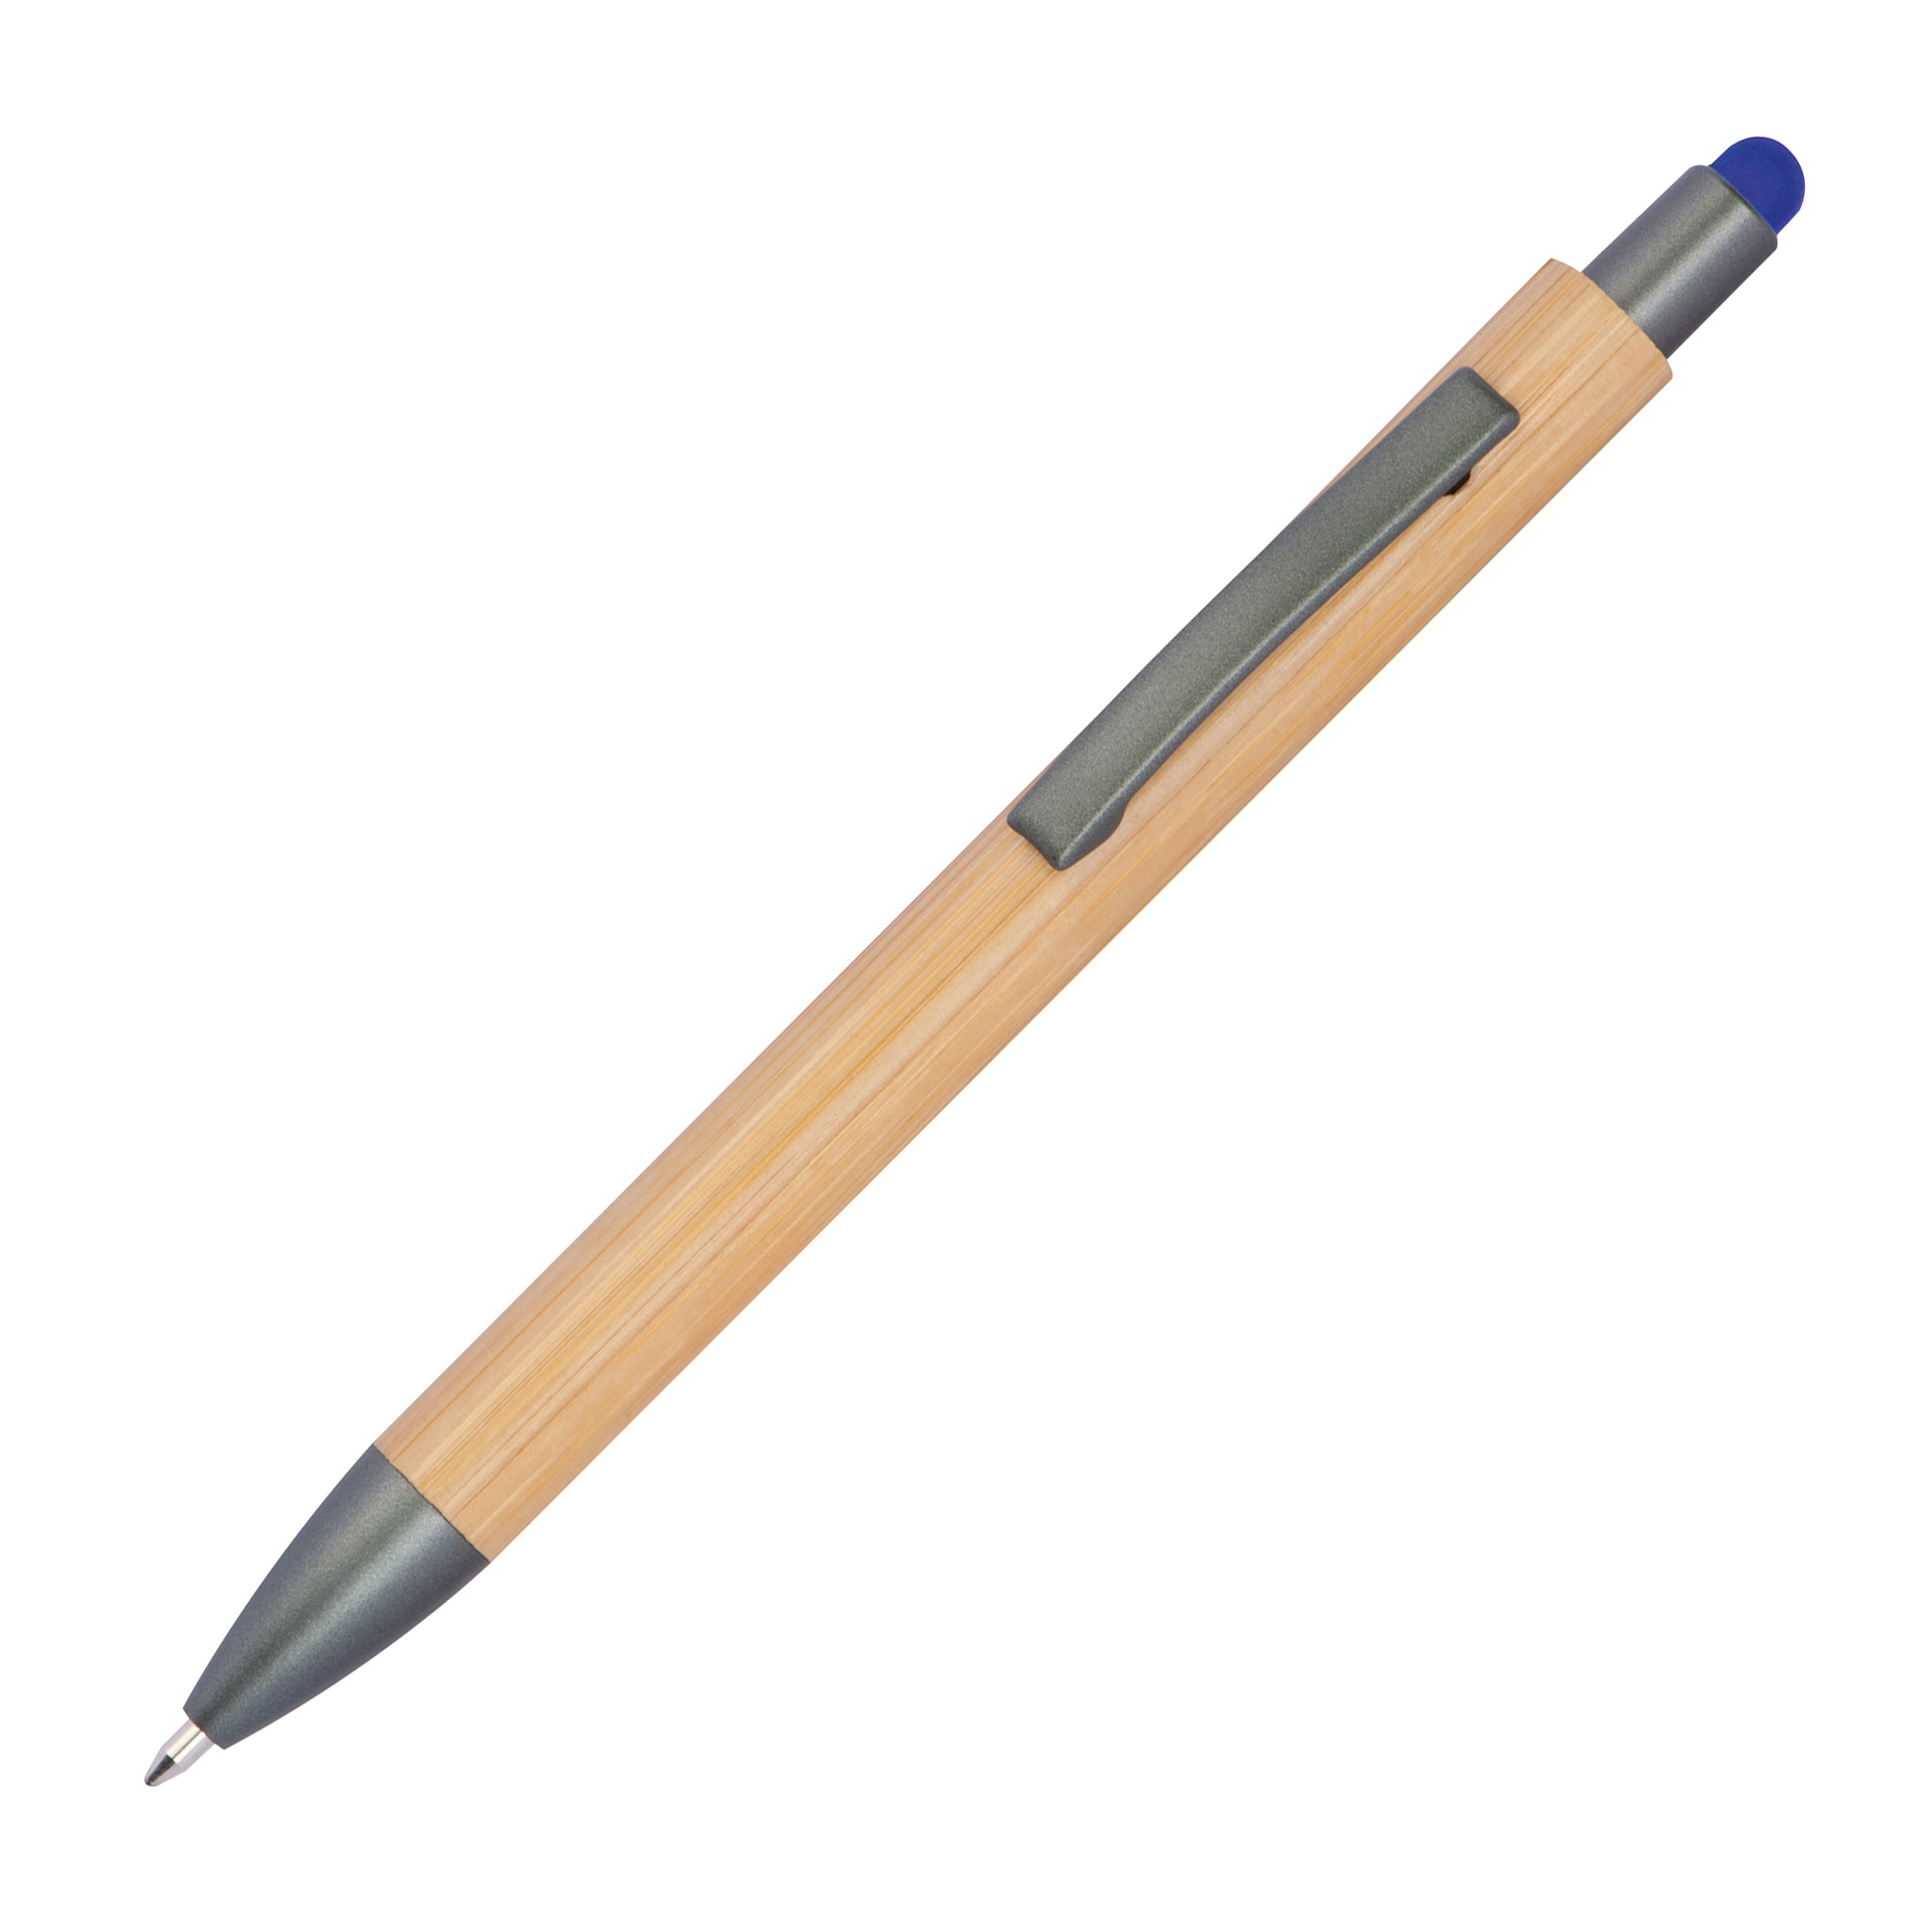 A ballpoint pen made from bamboo - Slaithwaite - Cheltenham